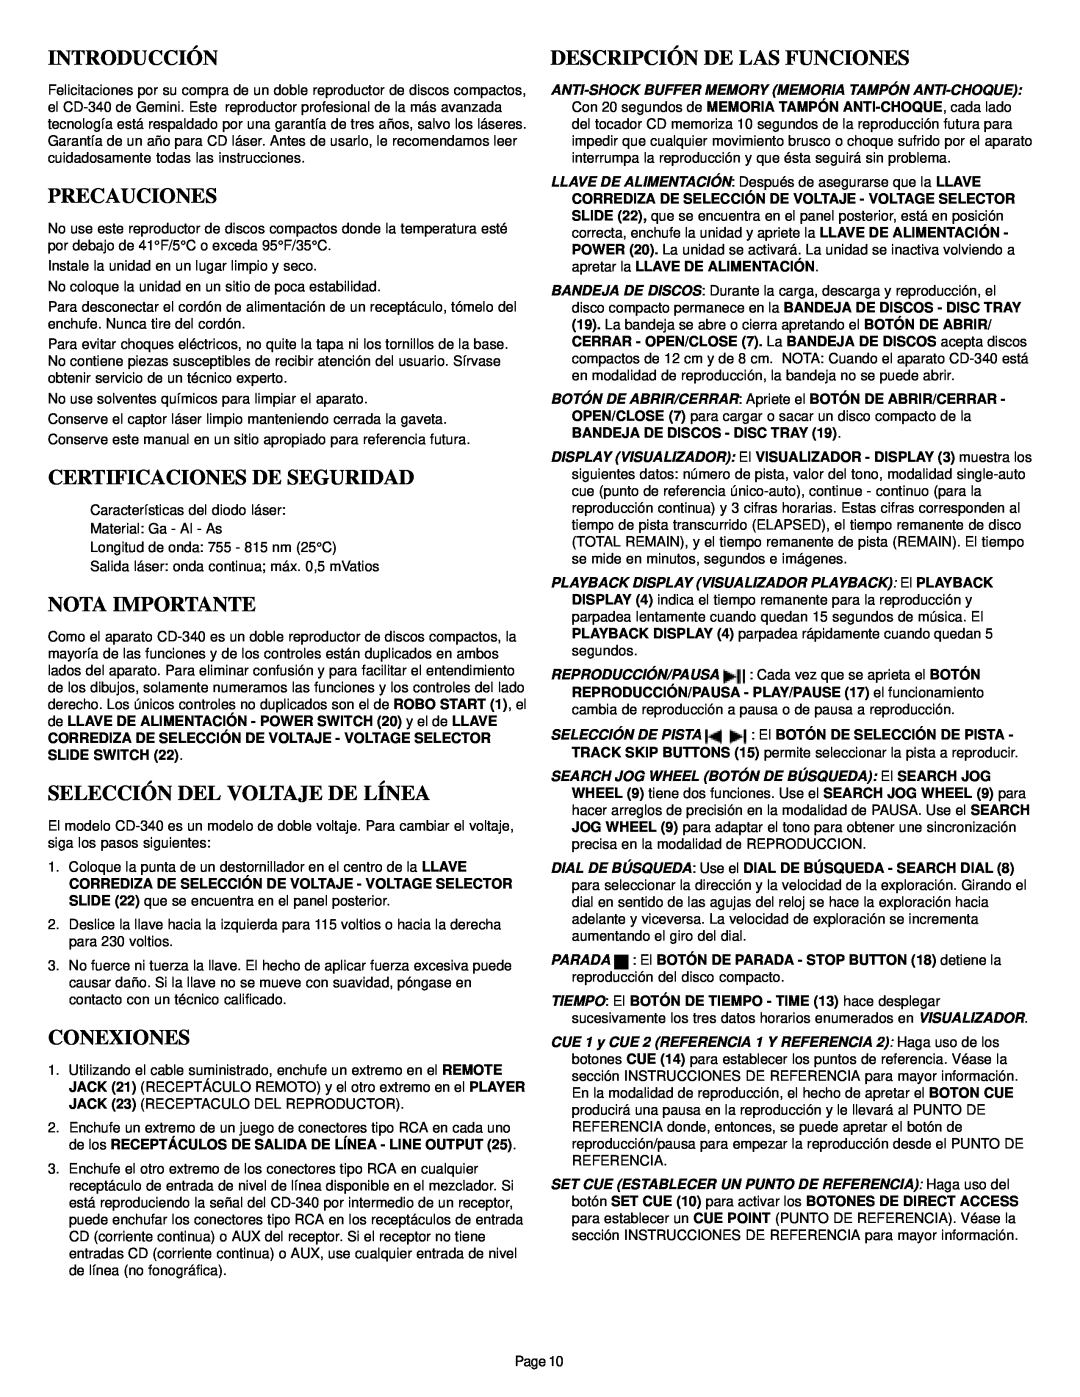 Gemini CD-340 Introducción, Precauciones, Certificaciones De Seguridad, Nota Importante, Selección Del Voltaje De Línea 